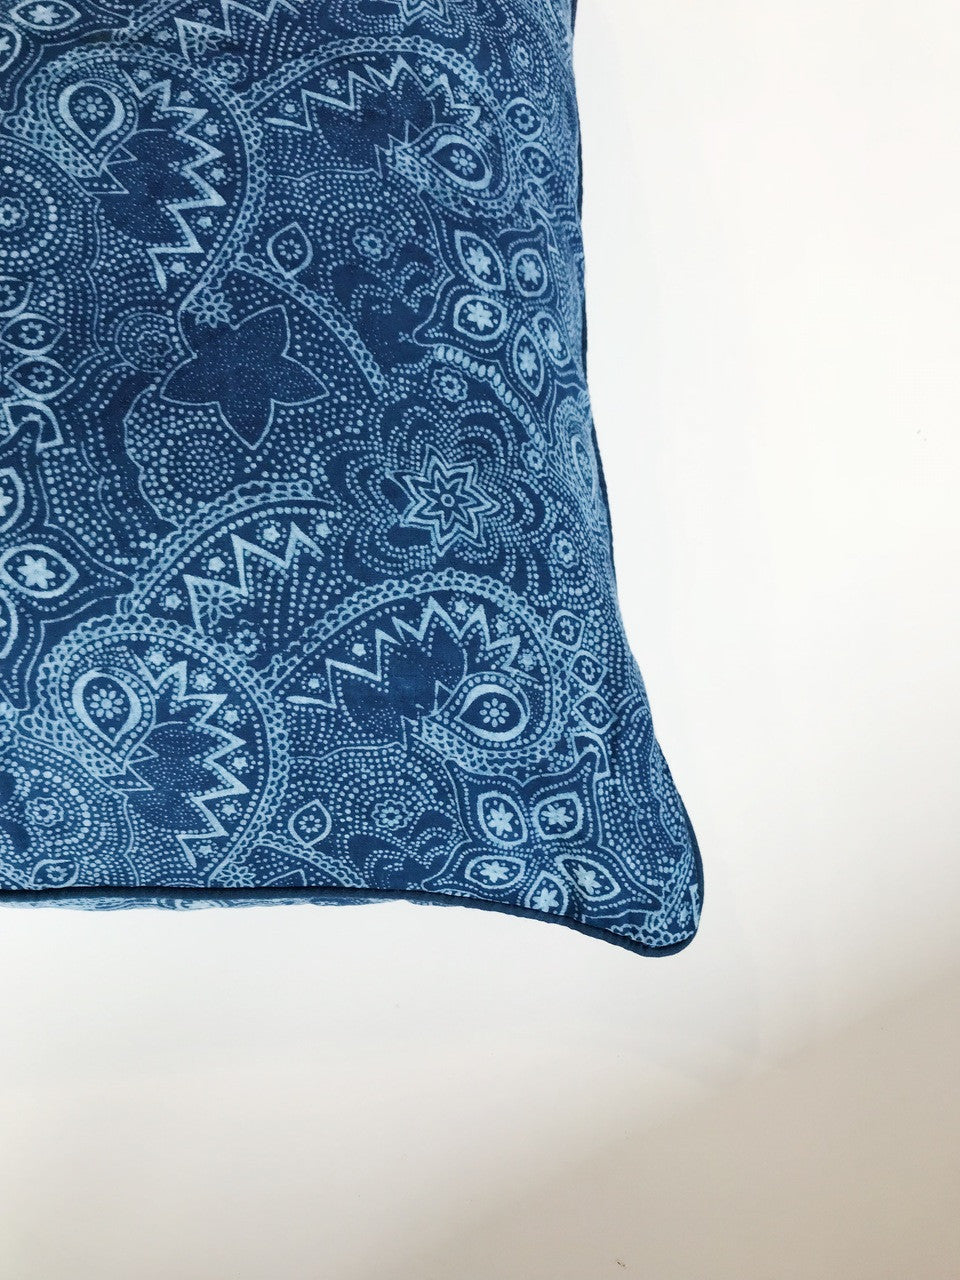 Blue Nankeen Cushion Cover